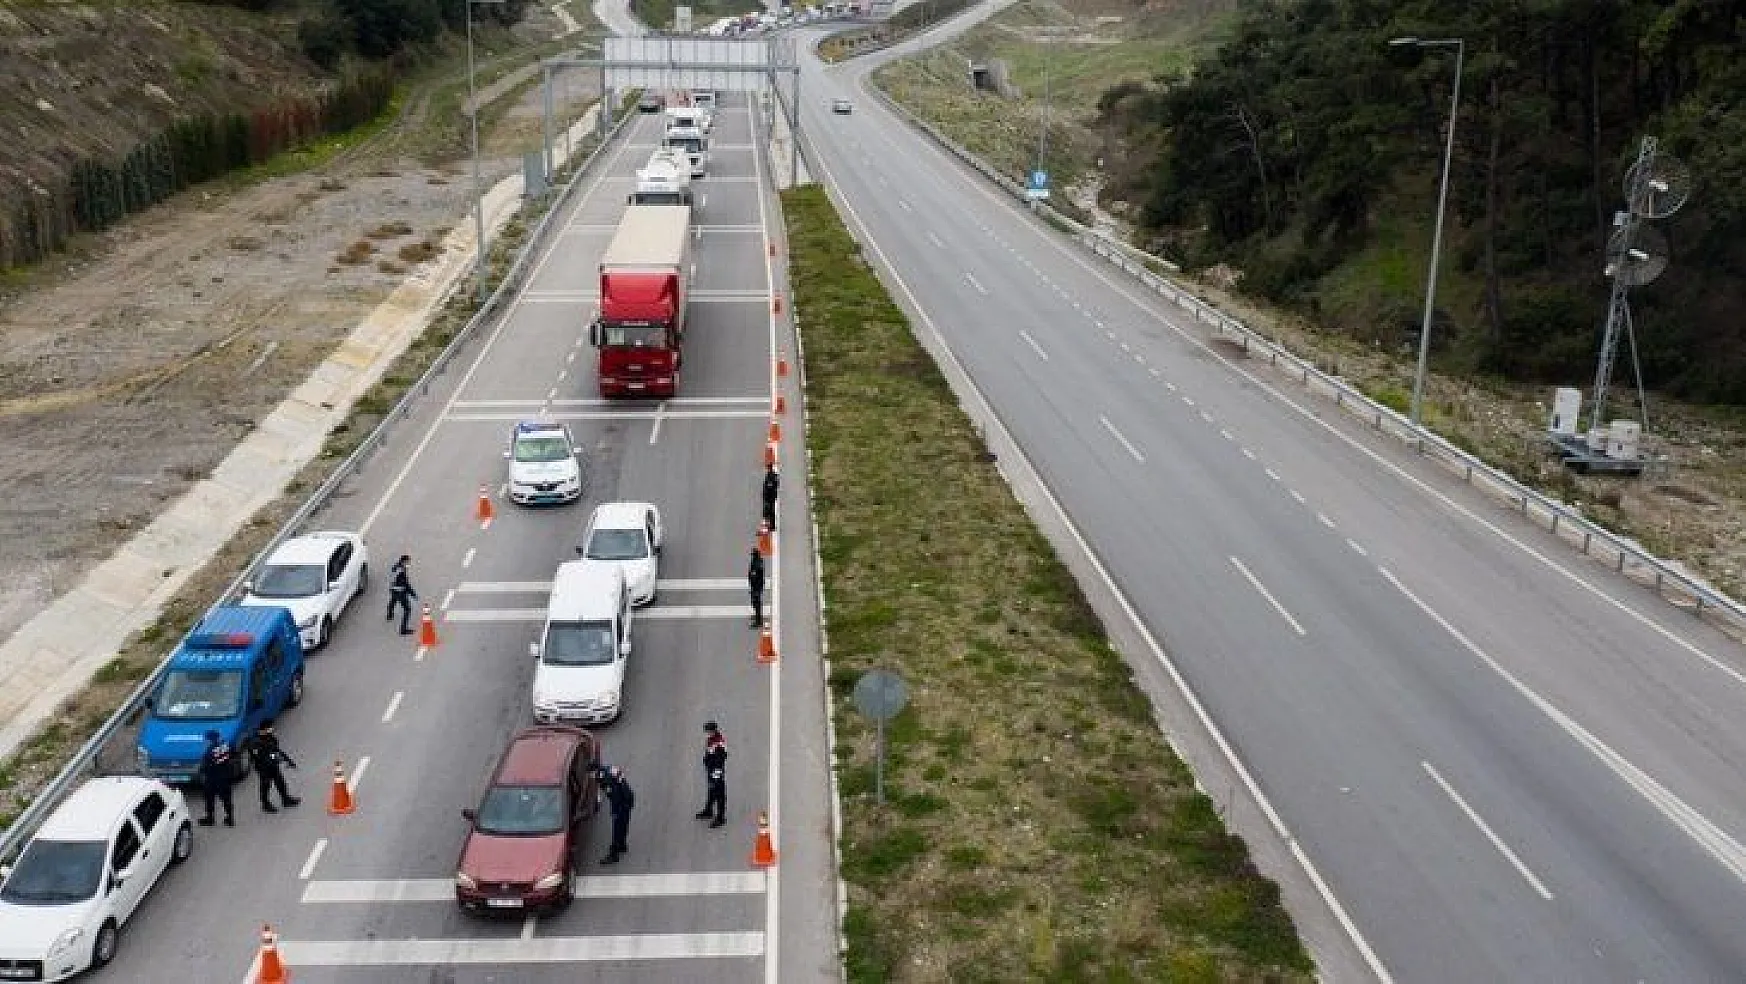 30 büyükşehir ve Zonguldak'a giriş çıkış kısıtlaması 15 gün daha uzatıldı